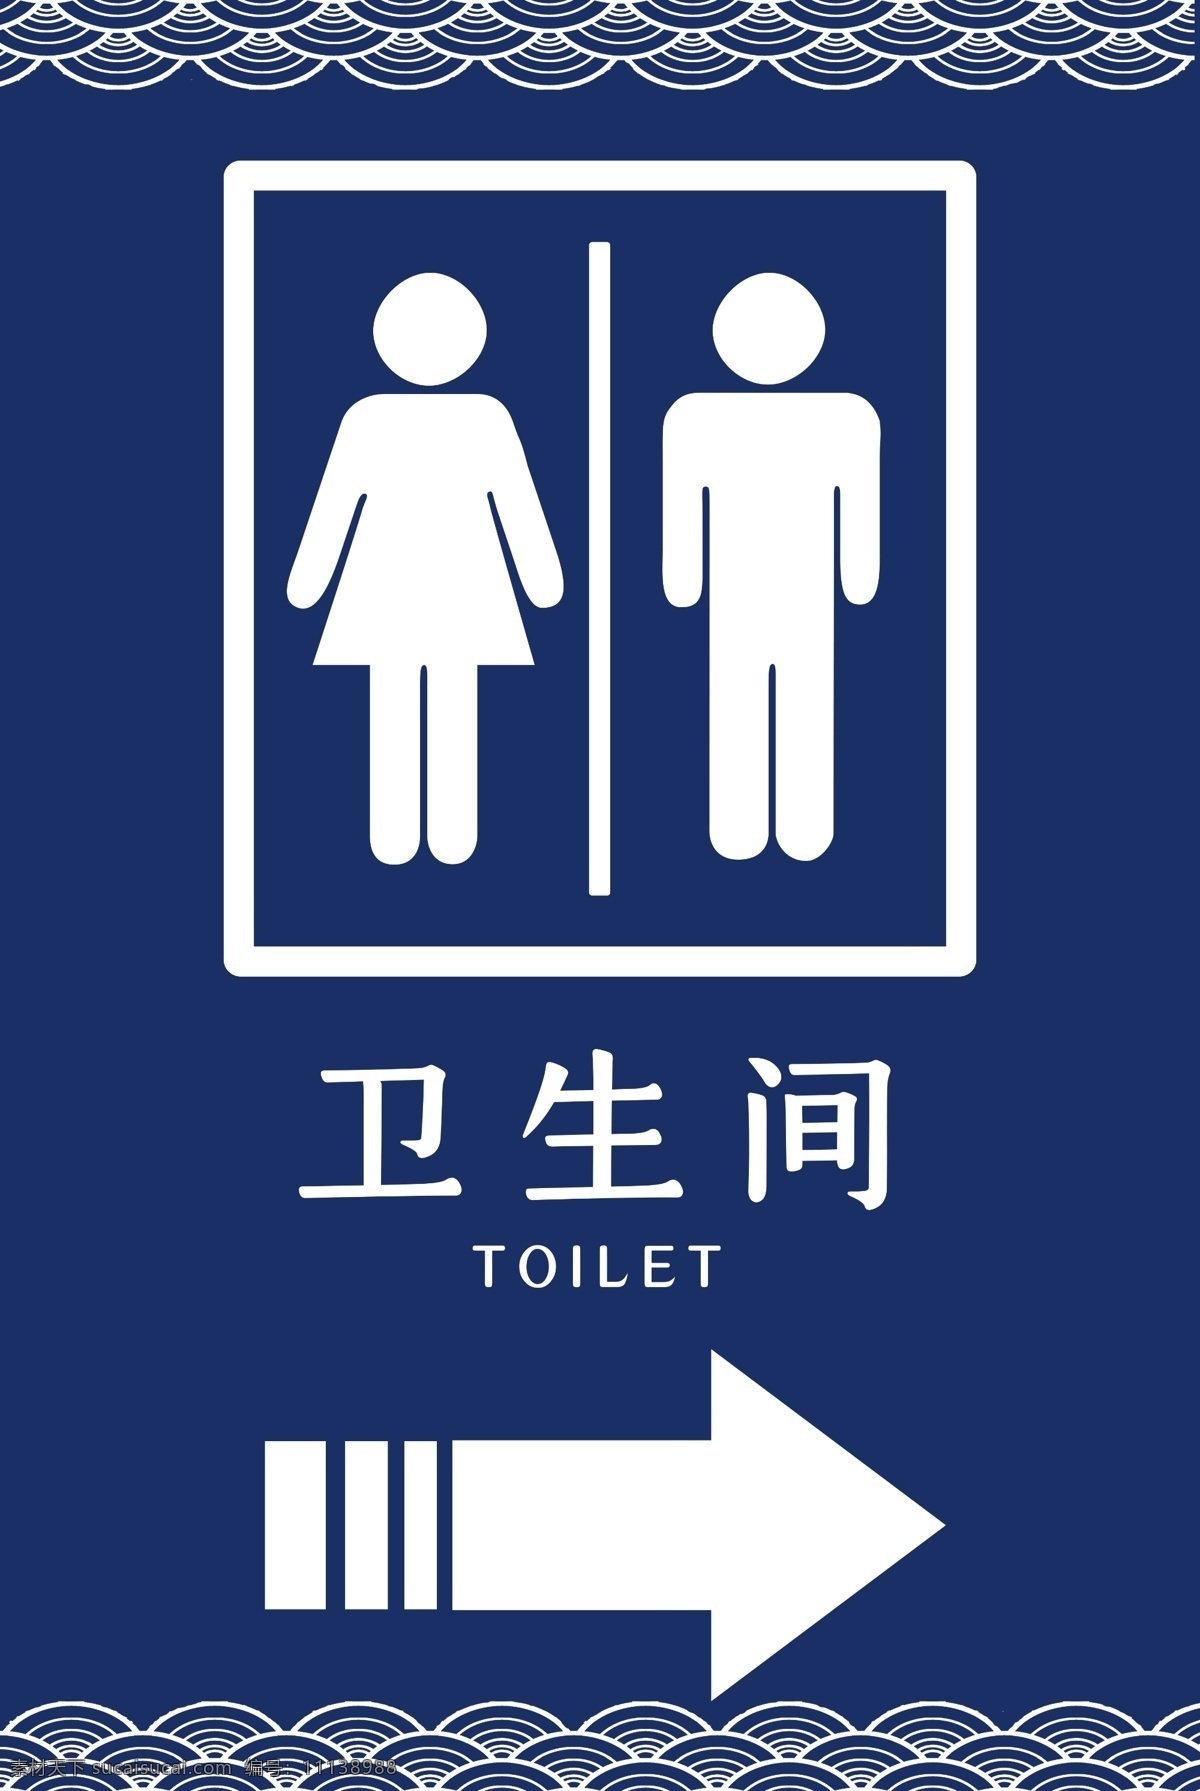 卫生间 指示牌 厕所 箭头 男女 标志图标 公共标识标志